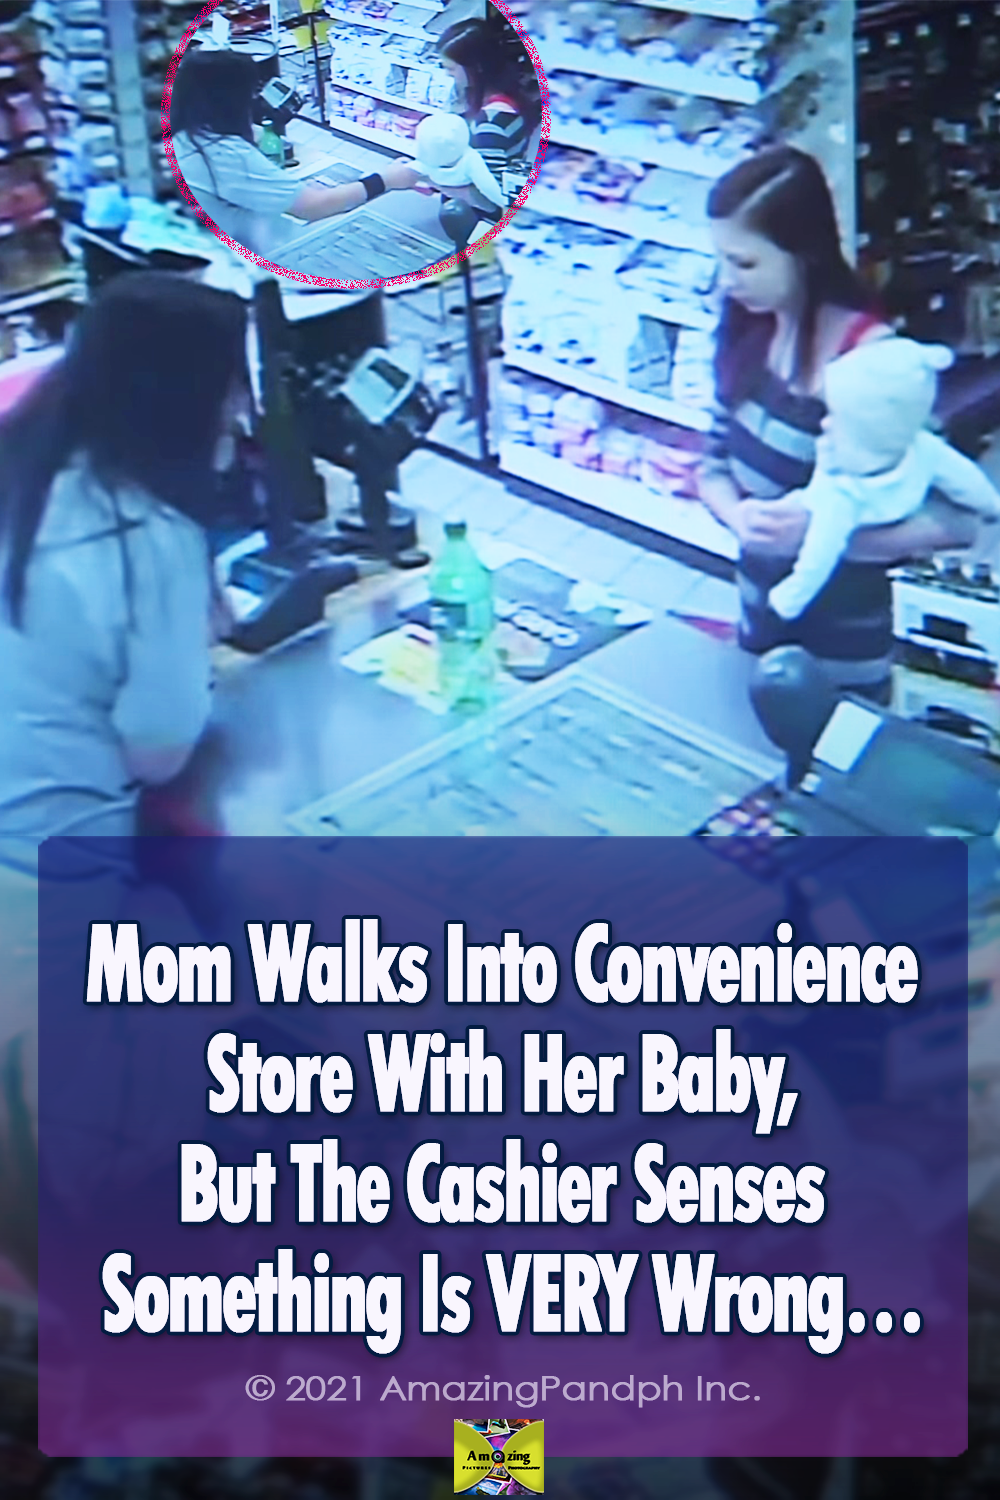 camera, record, baby, mom, accident, Colorado, surveillance, store, clerk,